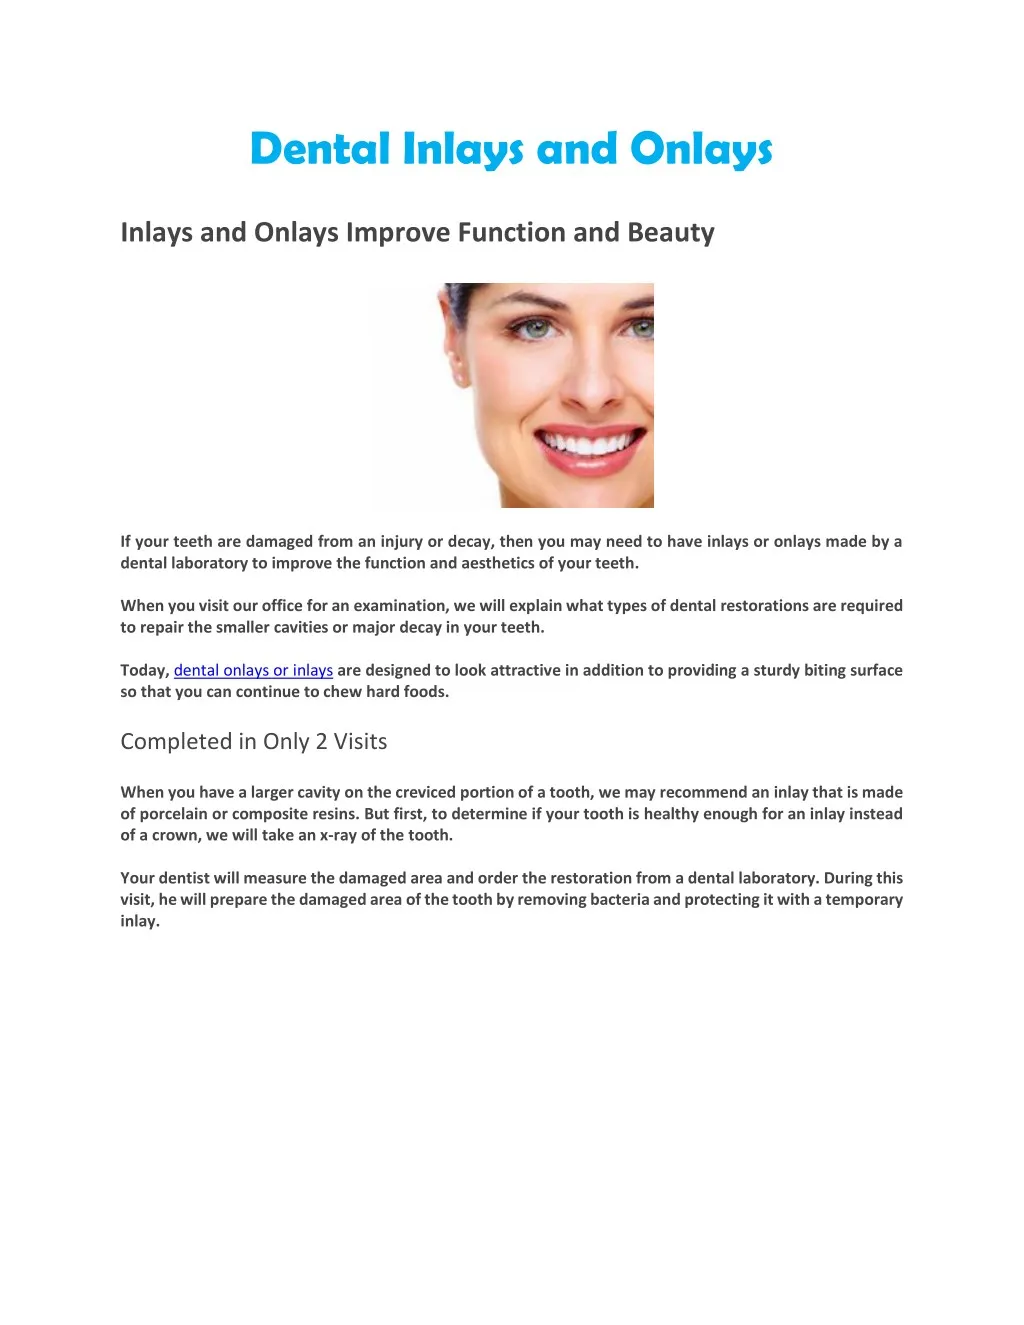 dental inlays and onlays home dental inlays